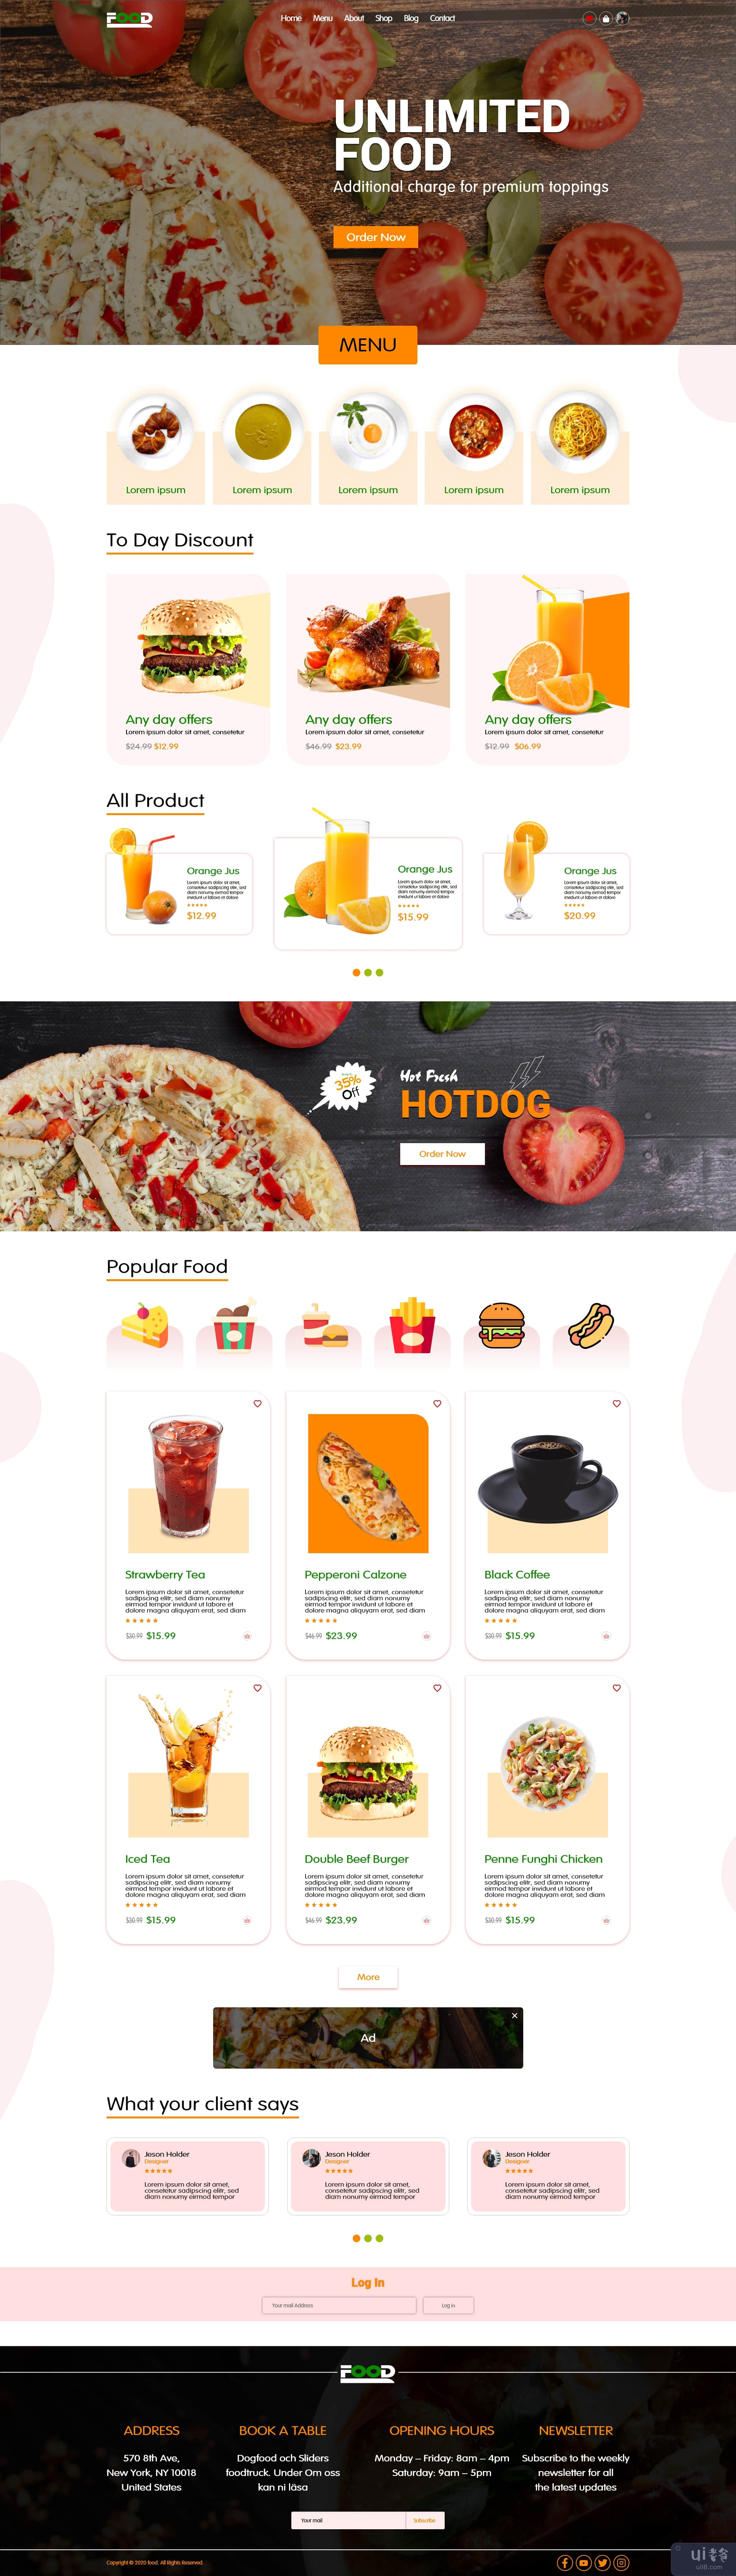 电子商务食品购物在线登陆页面设计(E-commerce Food Shopping Online Landing Page Design)插图